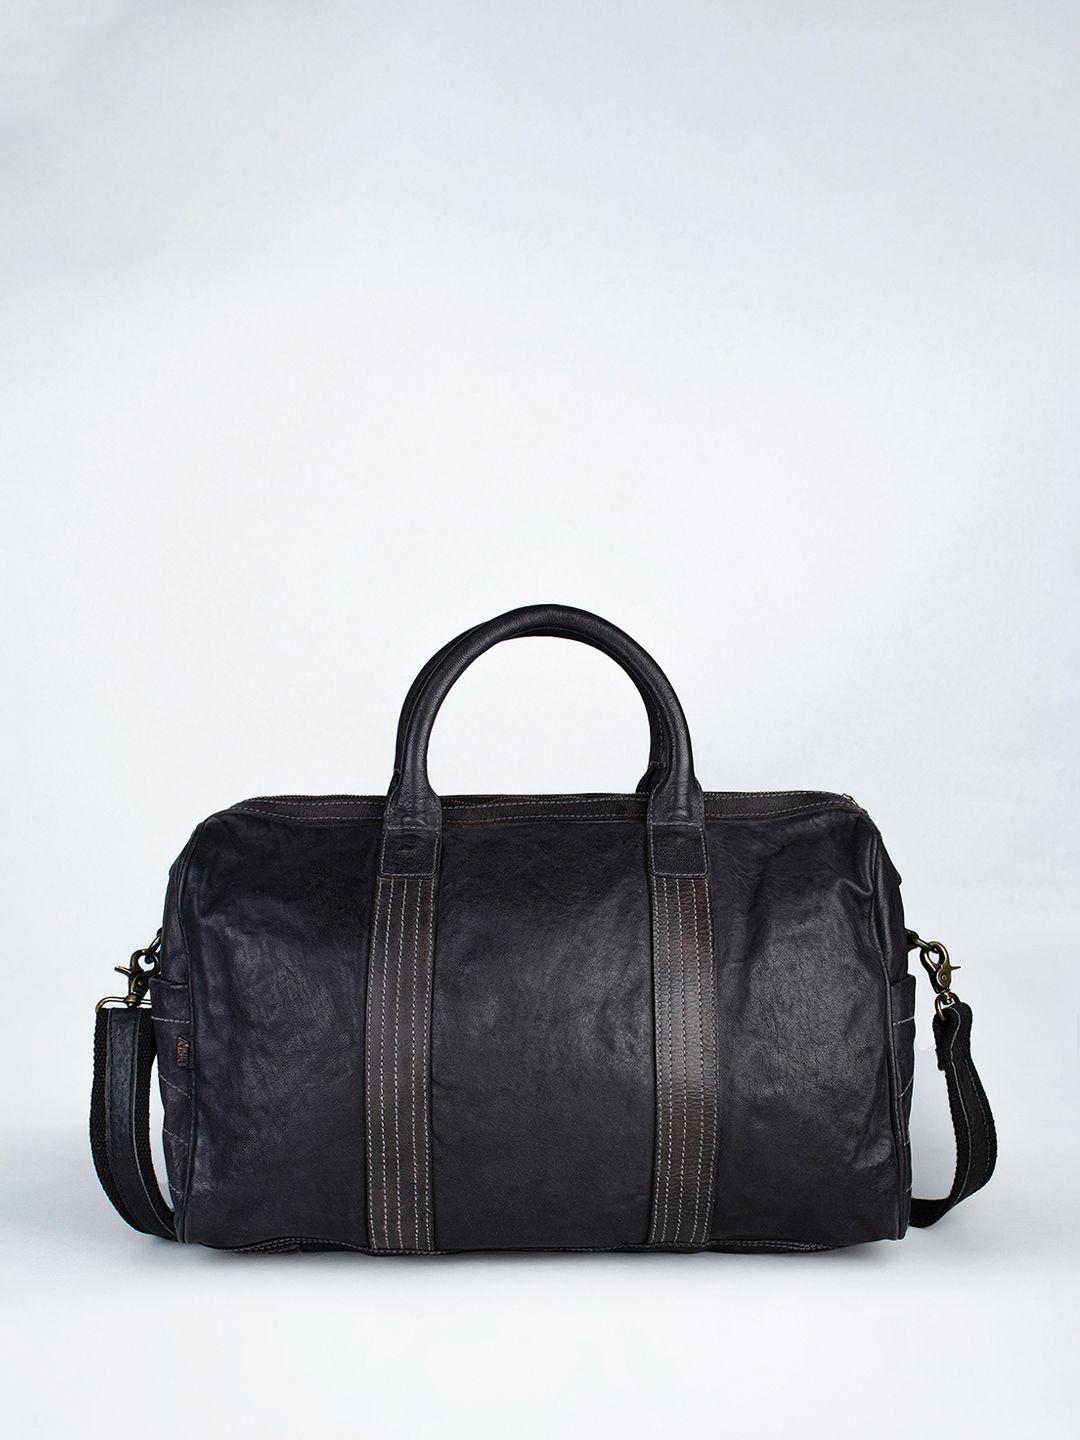 art n vintage unisex water-resistant large weekender leather duffel bag